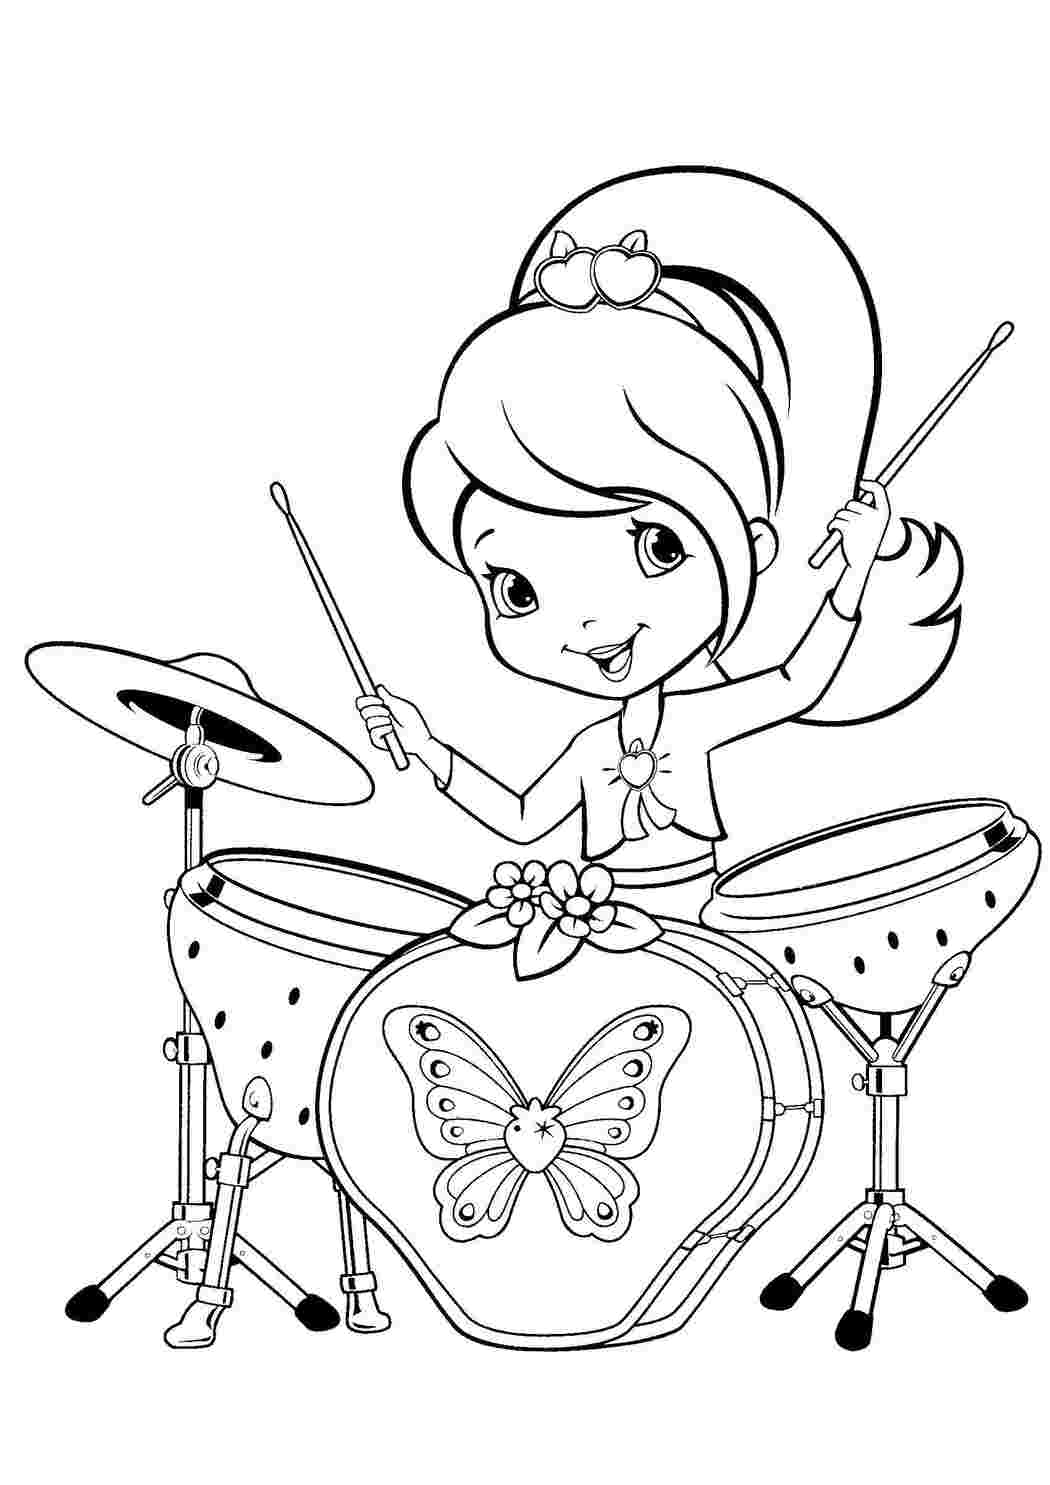 Раскраски Шарлотта земляничка играет на барабанах шарлотта земляничка мультики шарлотта, земляничка, мультики